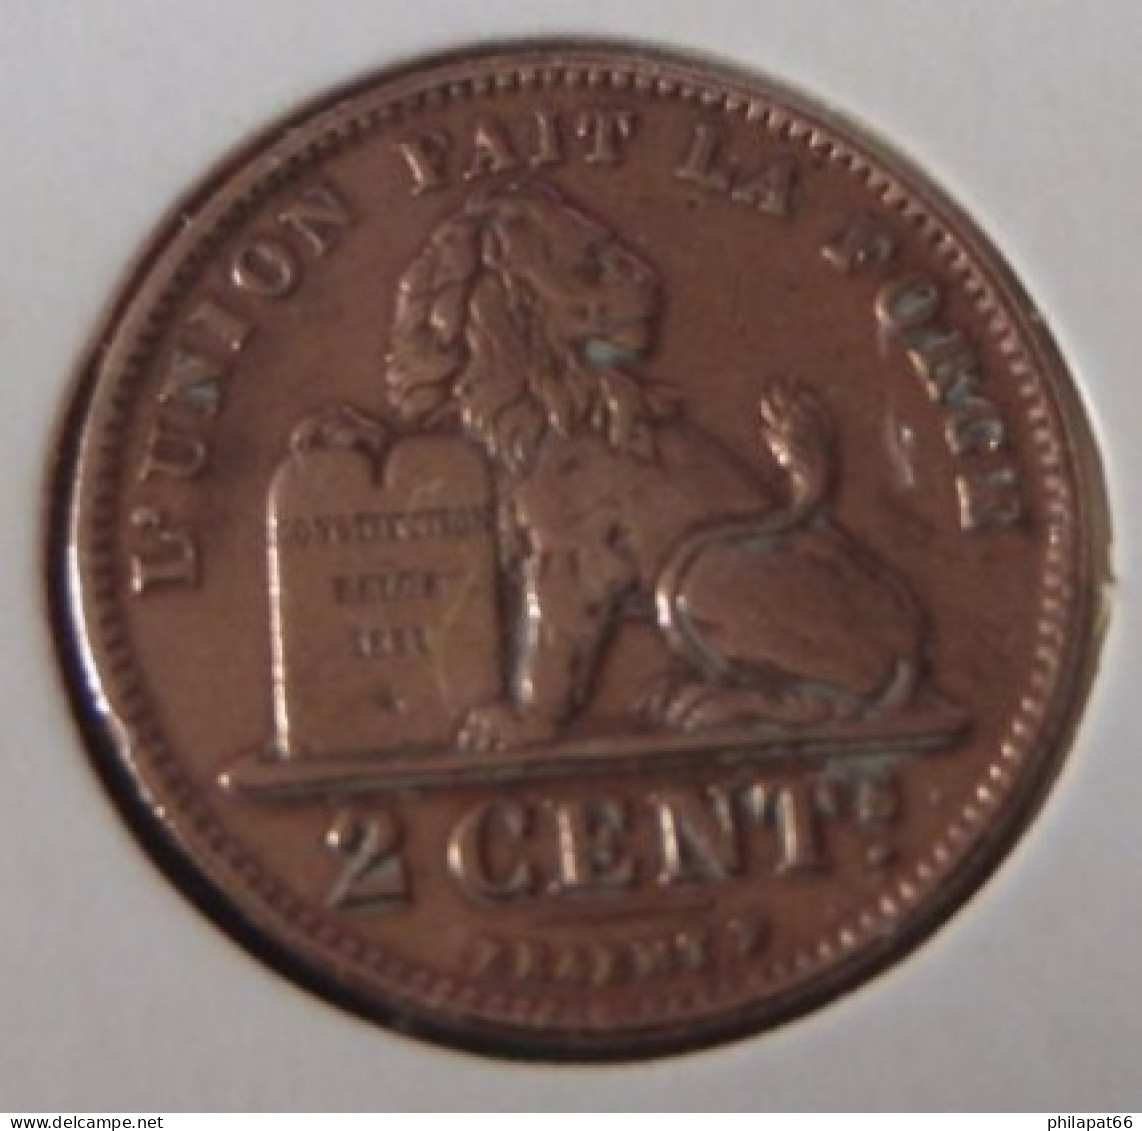 Albert I 2 Cent Belgische Leeuw 1912FR - 2 Cents